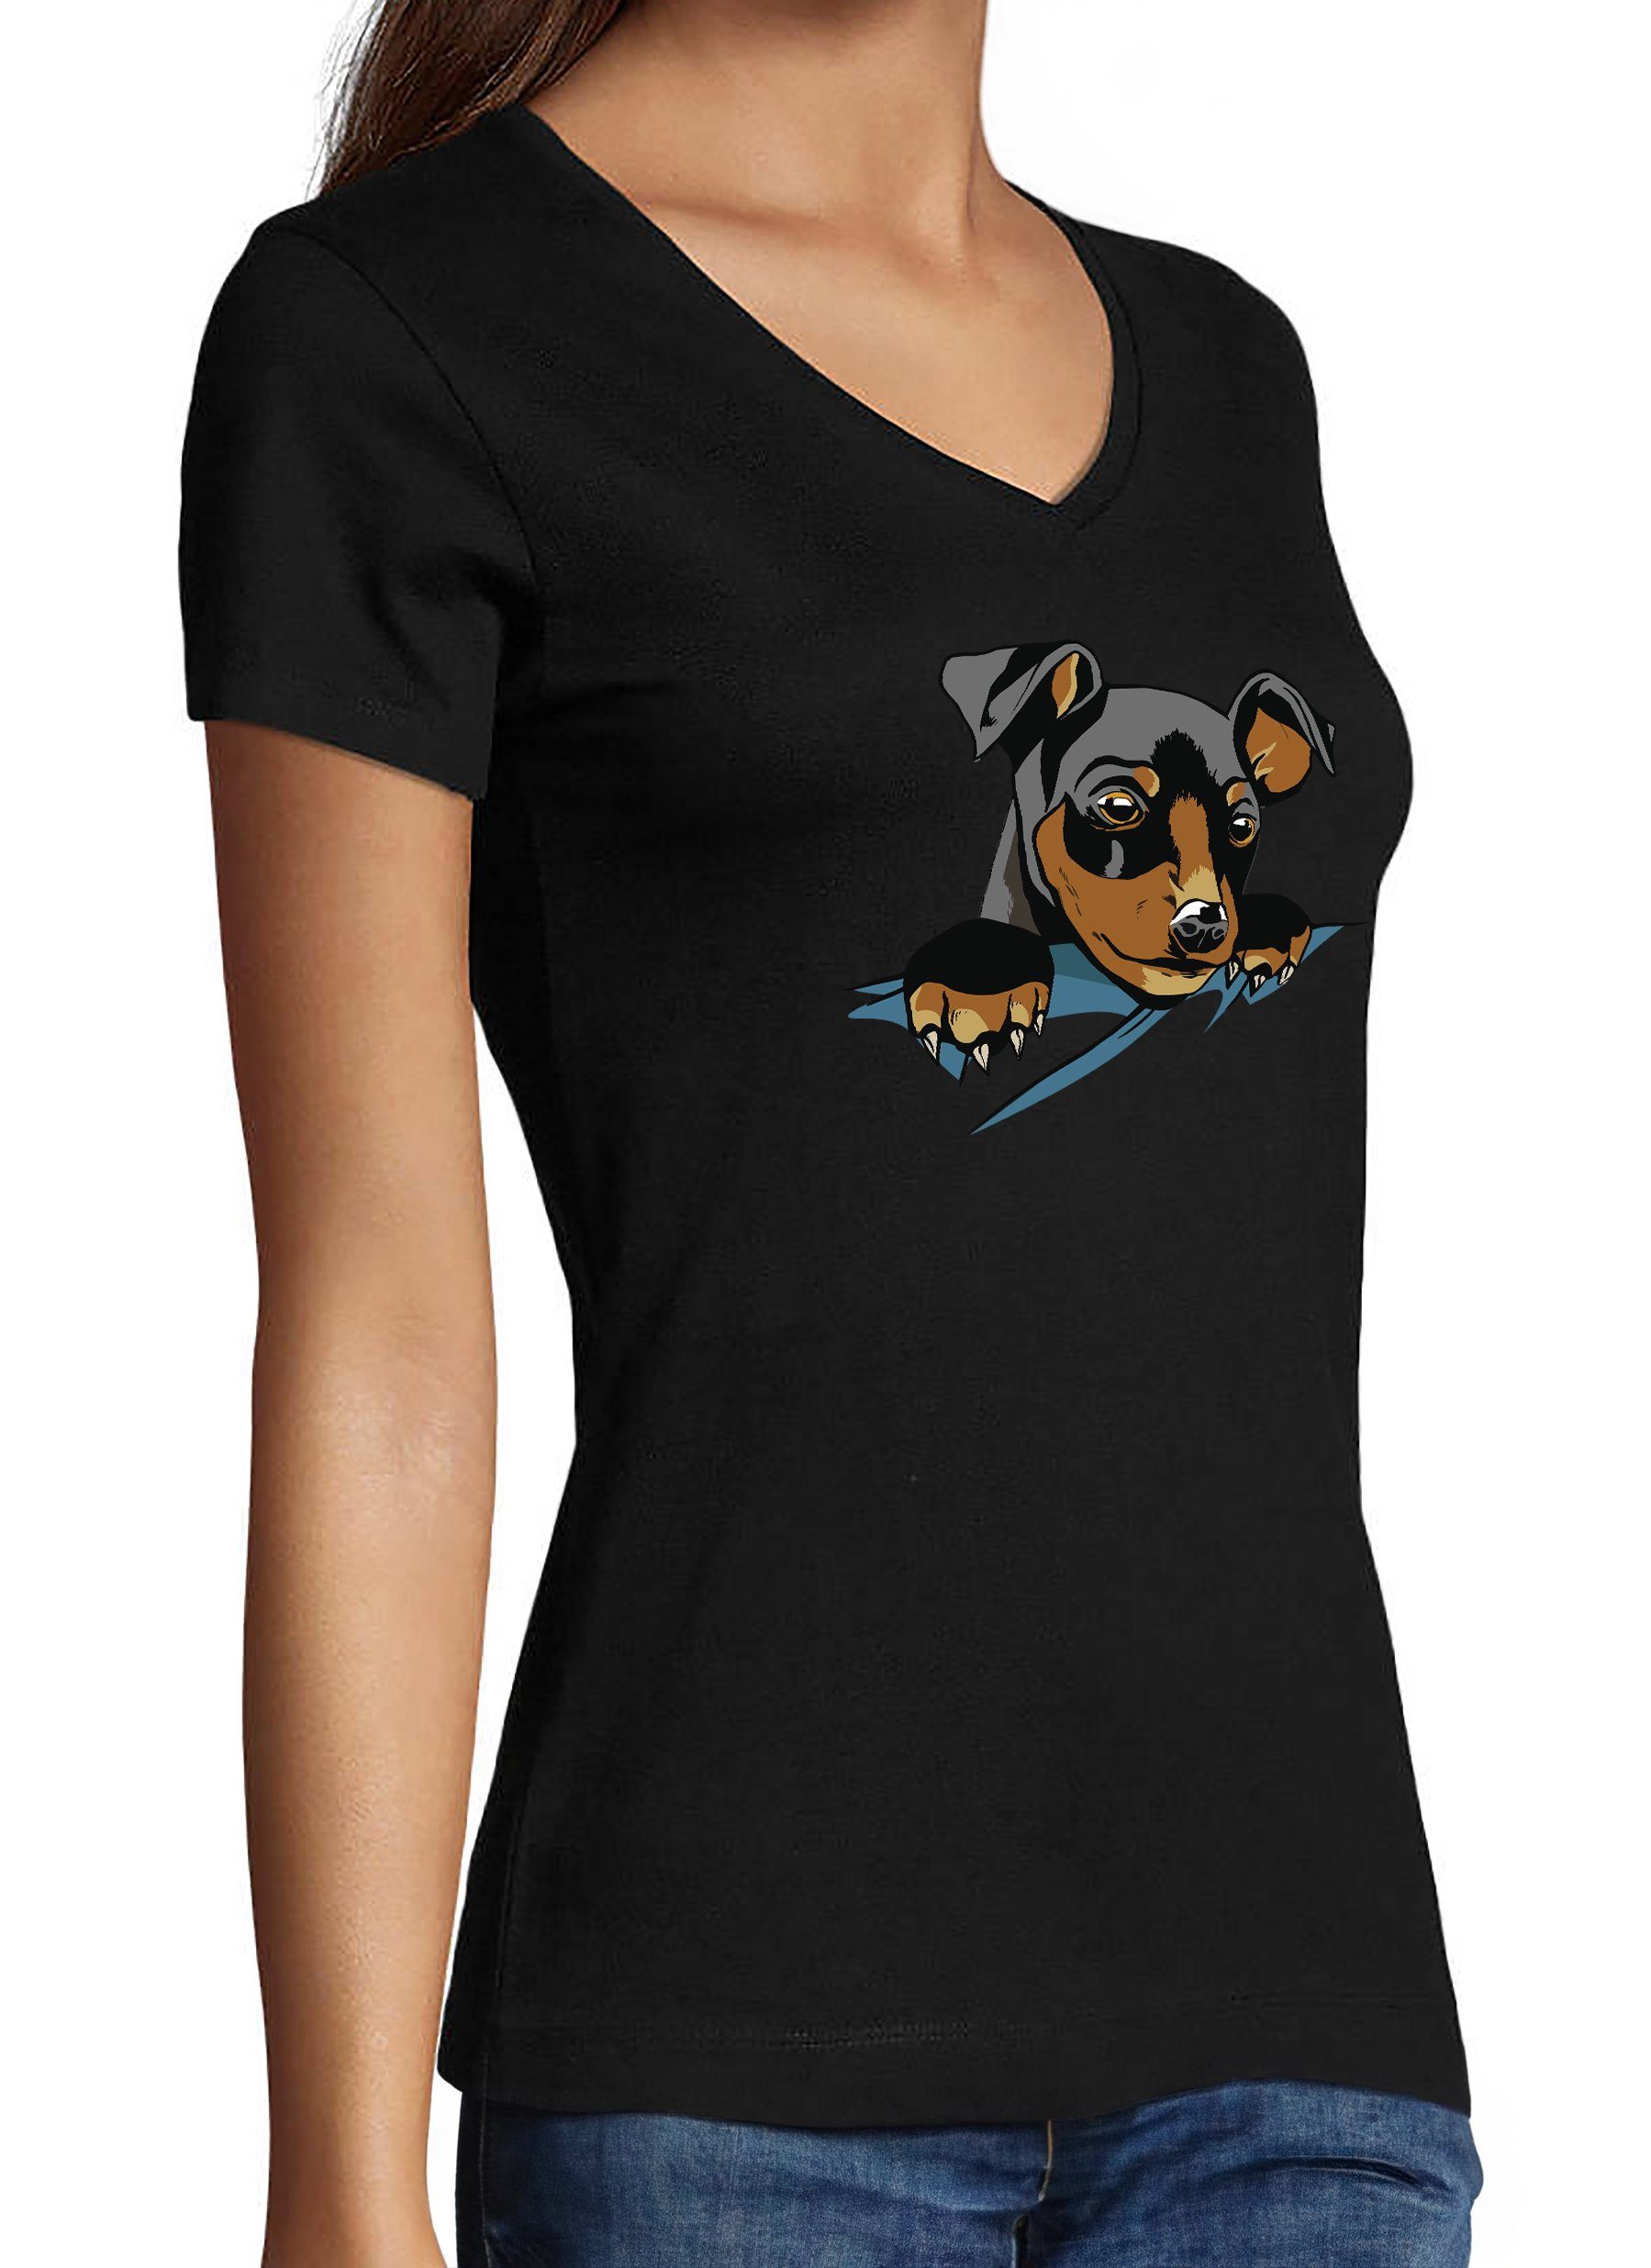 bedruckt mit Süßer MyDesign24 V-Ausschnitt Slim Fit, T-Shirt Damen Print Shirt Aufdruck, Hunde - schwarz Baumwollshirt i227 Hundewelpe